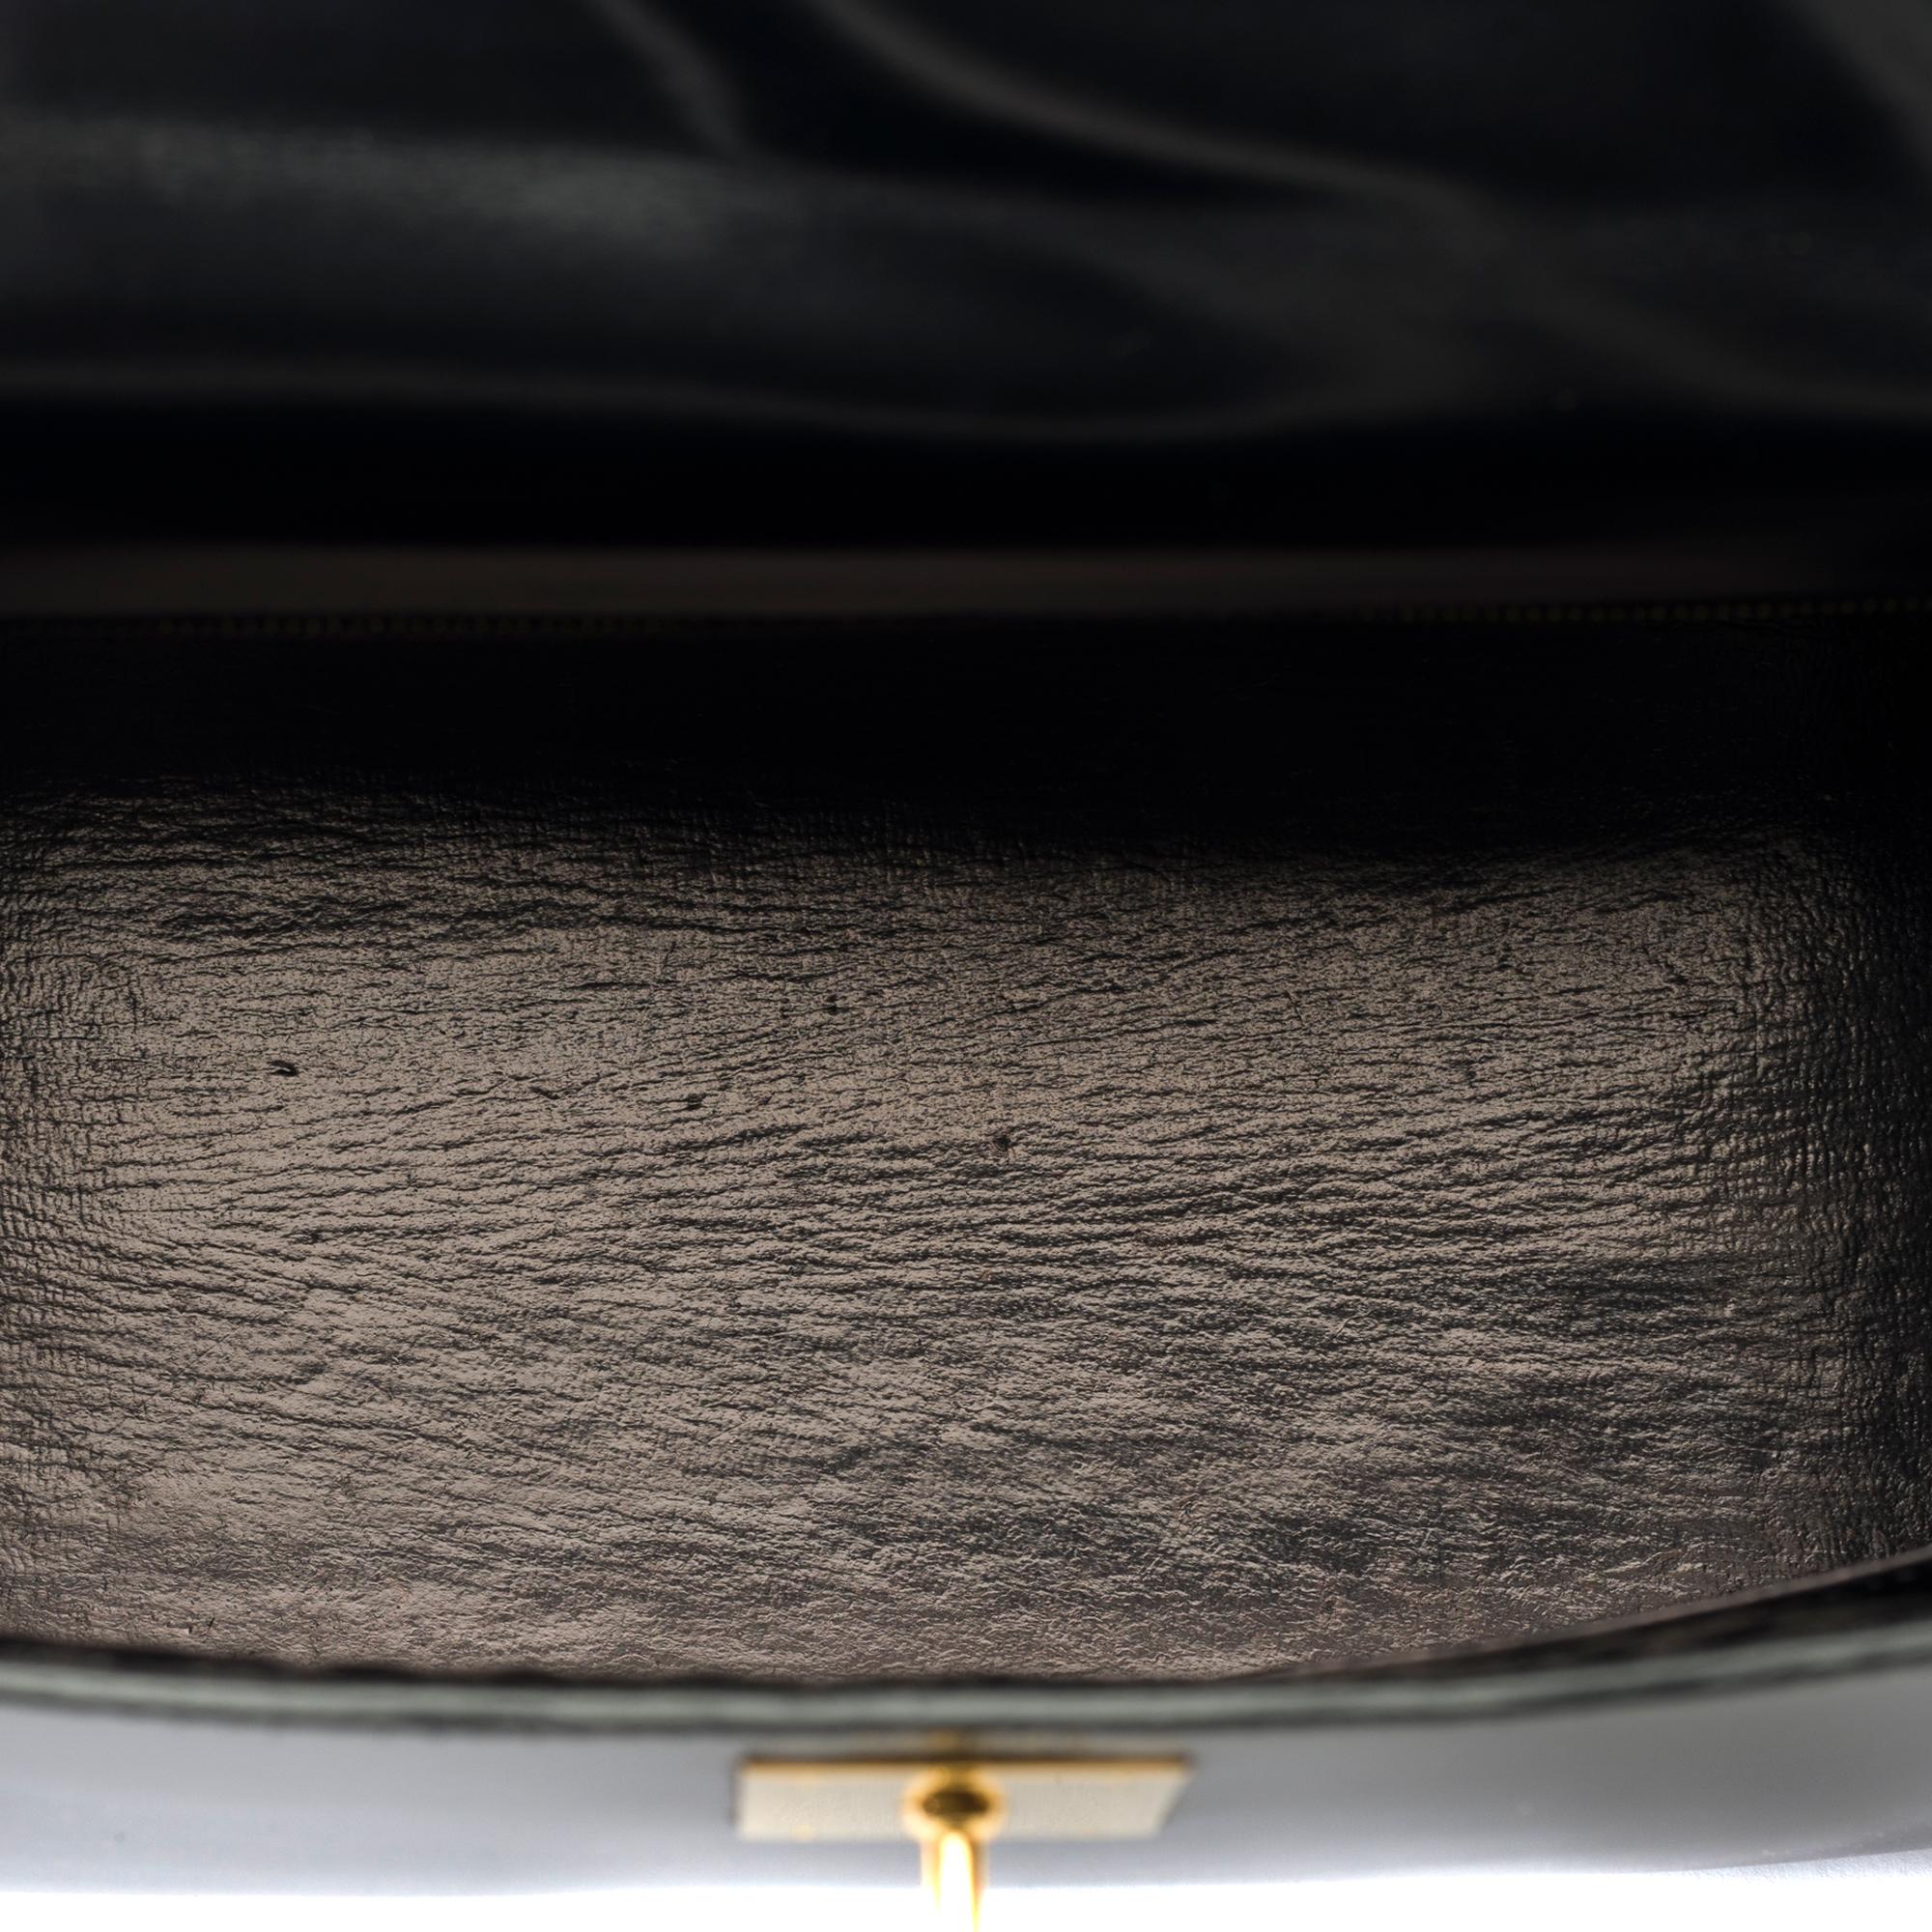 Hermes Kelly 28 sellier handbag in Black box calfskin leather, GHW For Sale 4